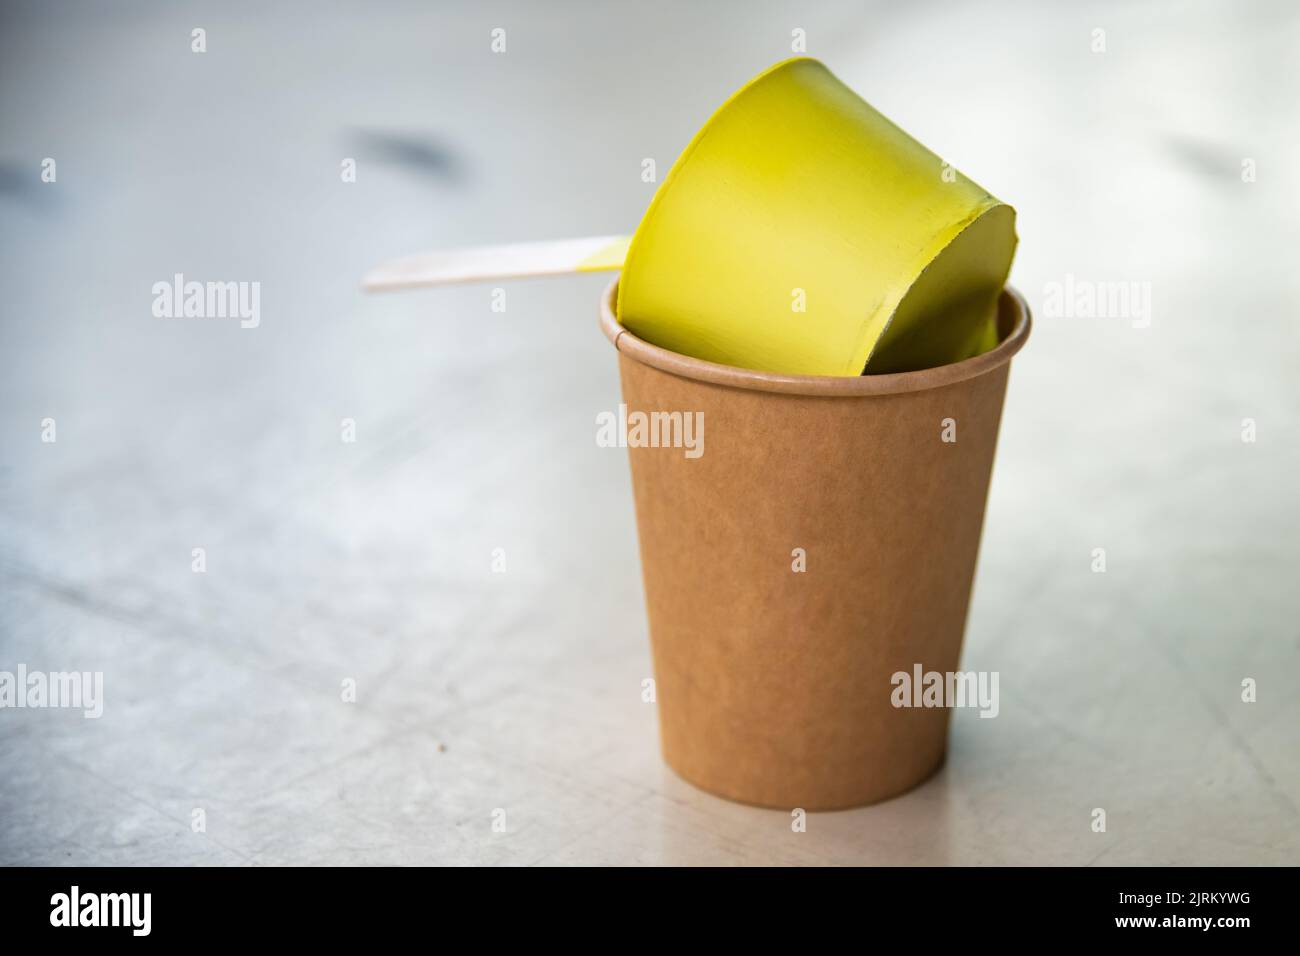 Gelbe Farbe, die im Behälter getrocknet und wie eine Form angenommen hat Stockfoto